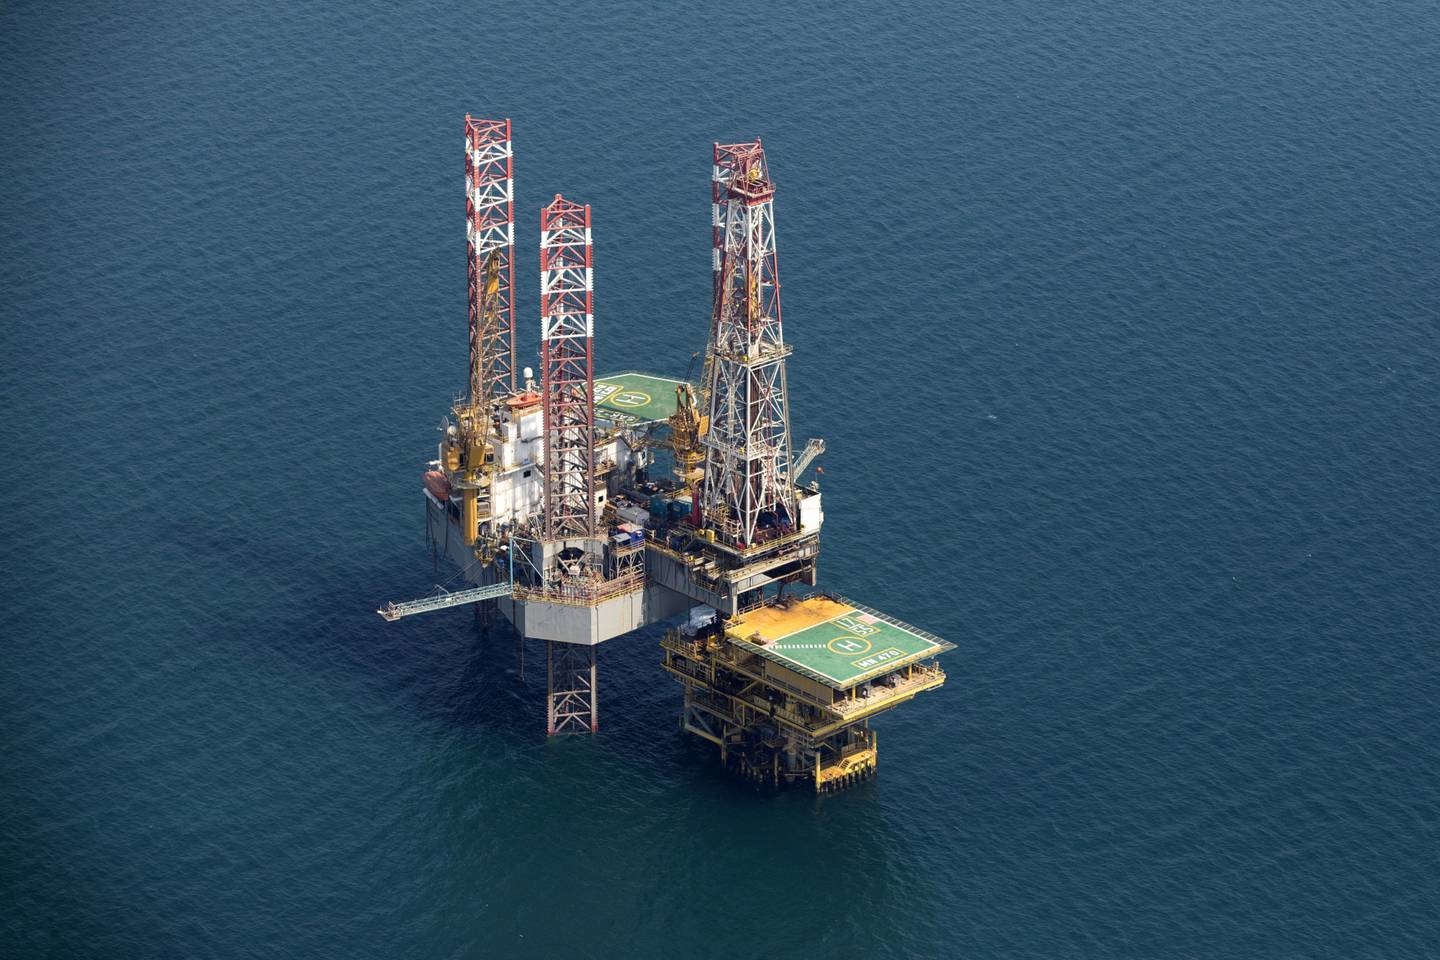 Los productores de petróleo y gas del Golfo Pérsico serán los mayores ganadores este año desde el punto de vista económico, según una encuesta de Bloomberg Economics.